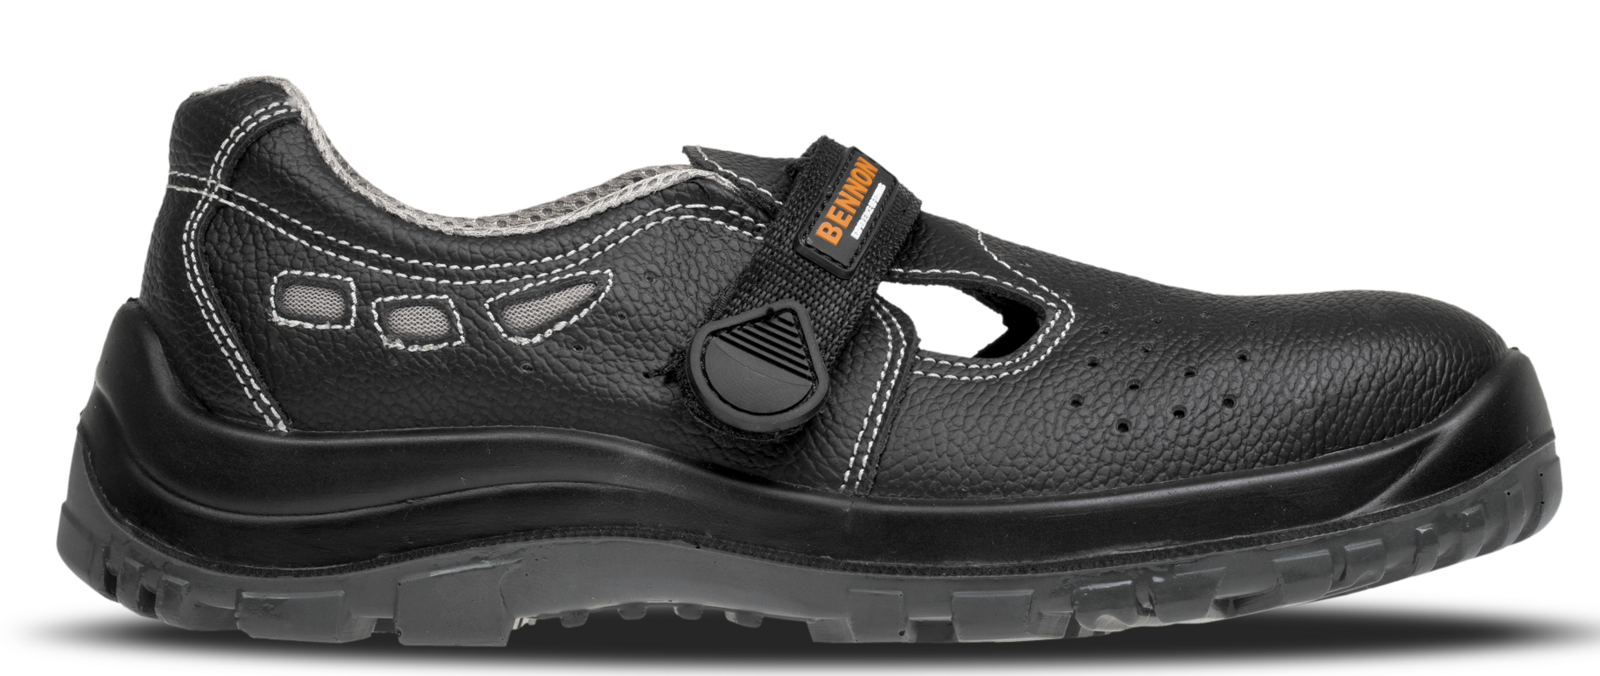 Bezpečnostné sandále Bennon Basic S1 - veľkosť: 37, farba: čierna